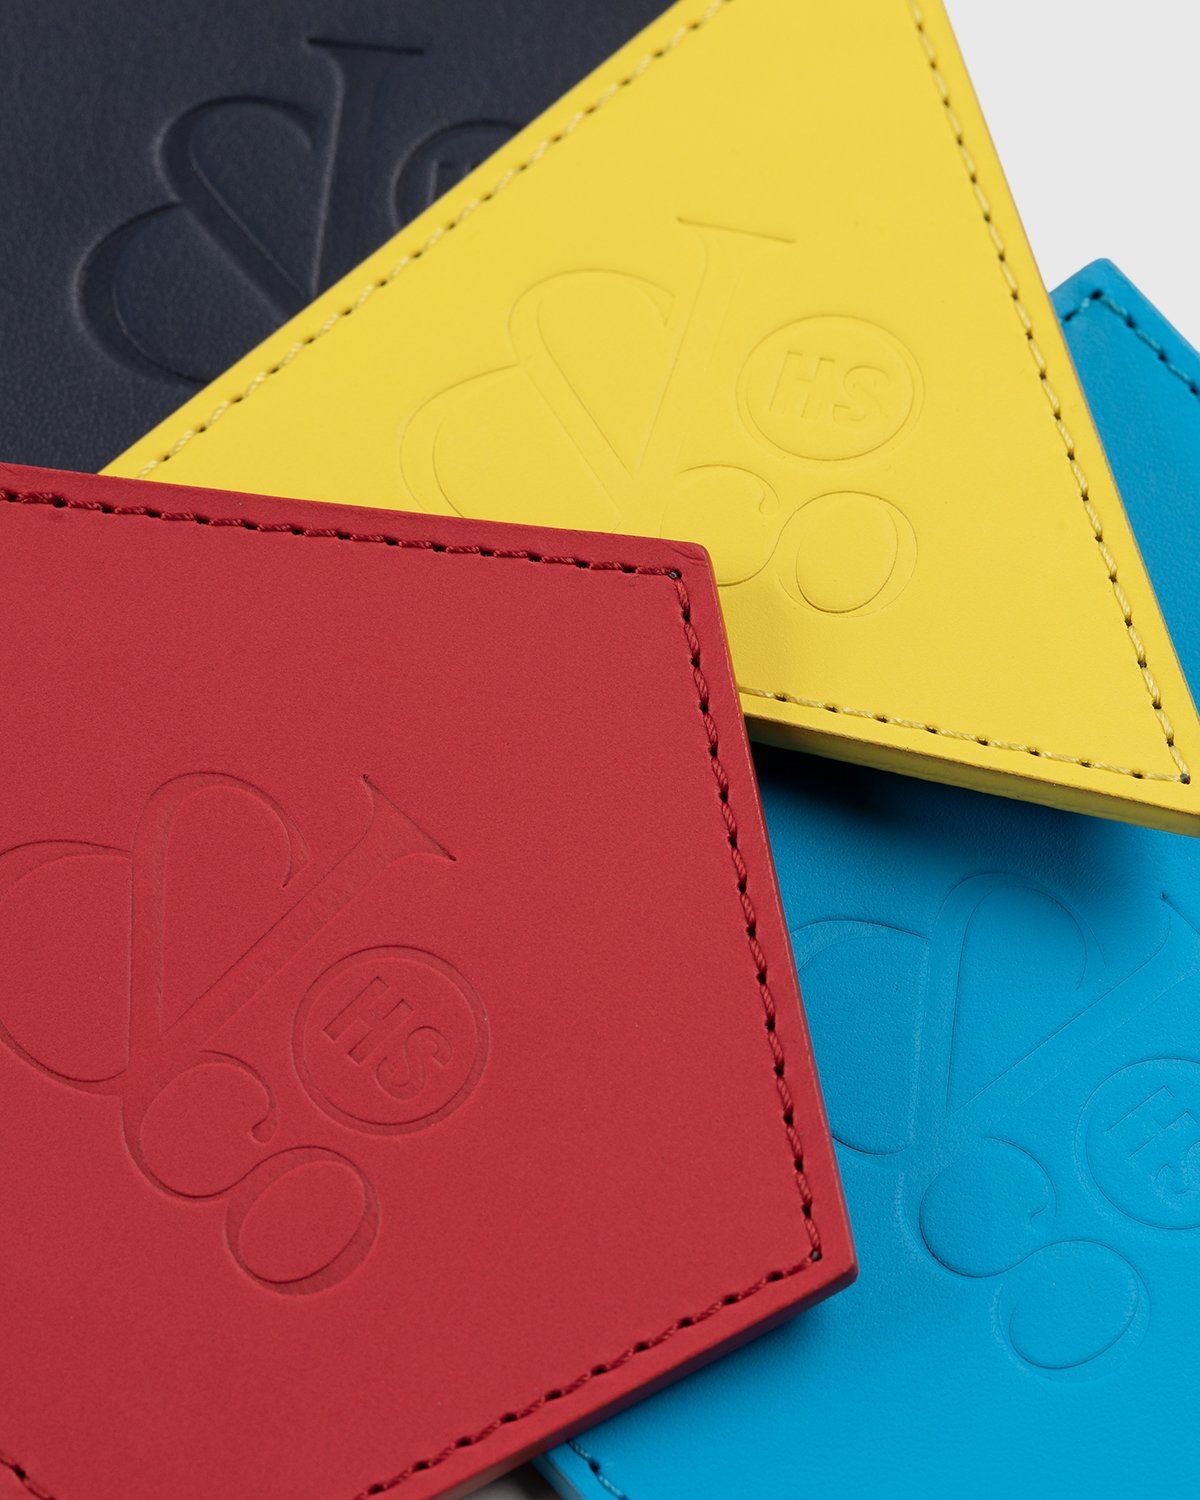 Jacob & Co. x Highsnobiety – Leather Coasters Multi - Image 4